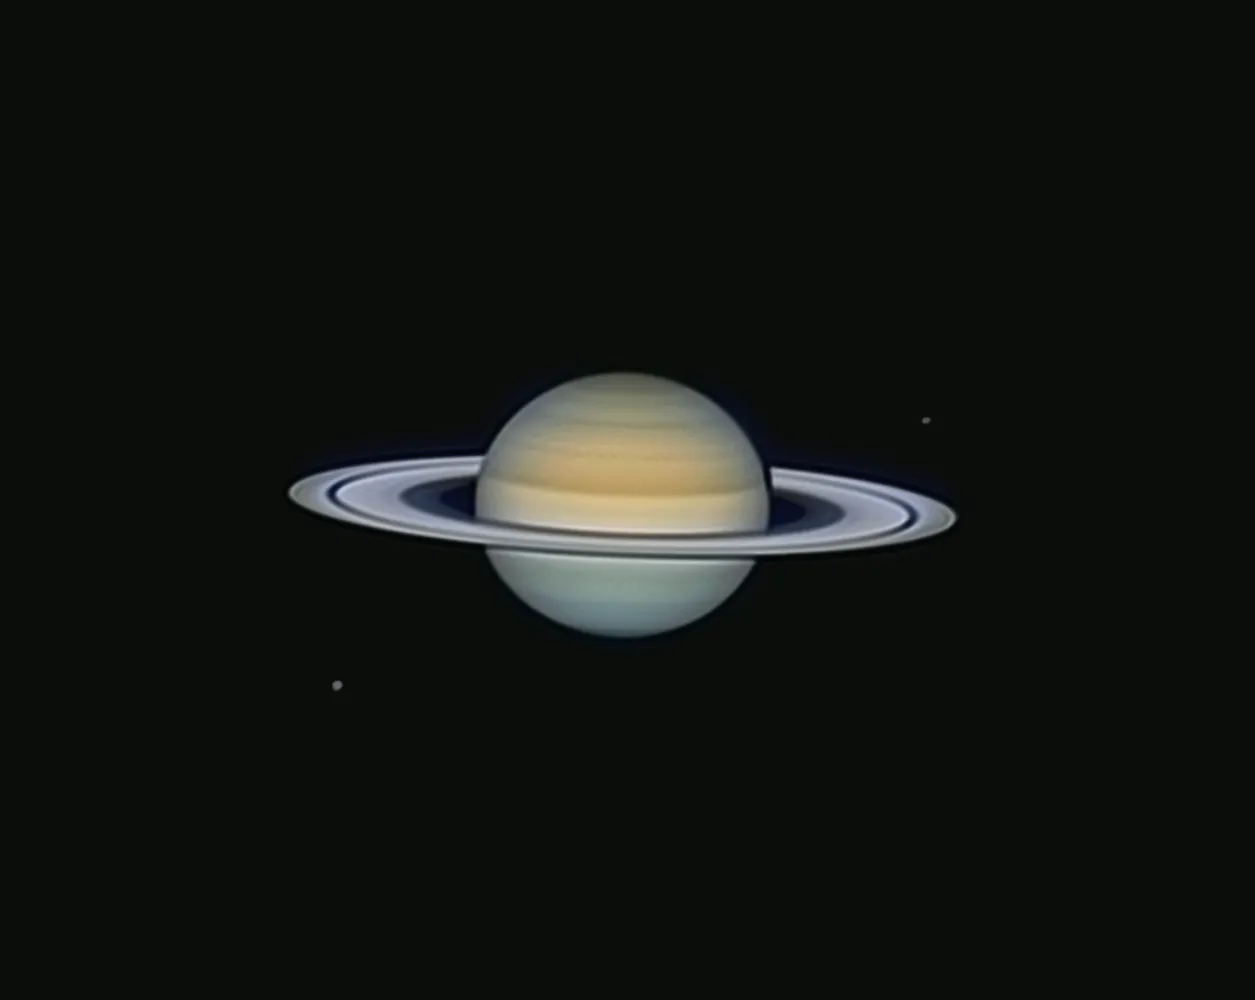 Jupiter, 21 août 2023, diamètre apparent: 42 secondes d'arc, détails visibles: Grande Tâche Rouge, satellite Io et son ombre qui se projette sur la GTR, telescope newton de 500 mm de diamètre, monture de type dobson avec entrainement par table équatoriale, focale utilisée: 8000mm, caméra ZWO 662c; compilation de 2500 images., @Henri-Pierre